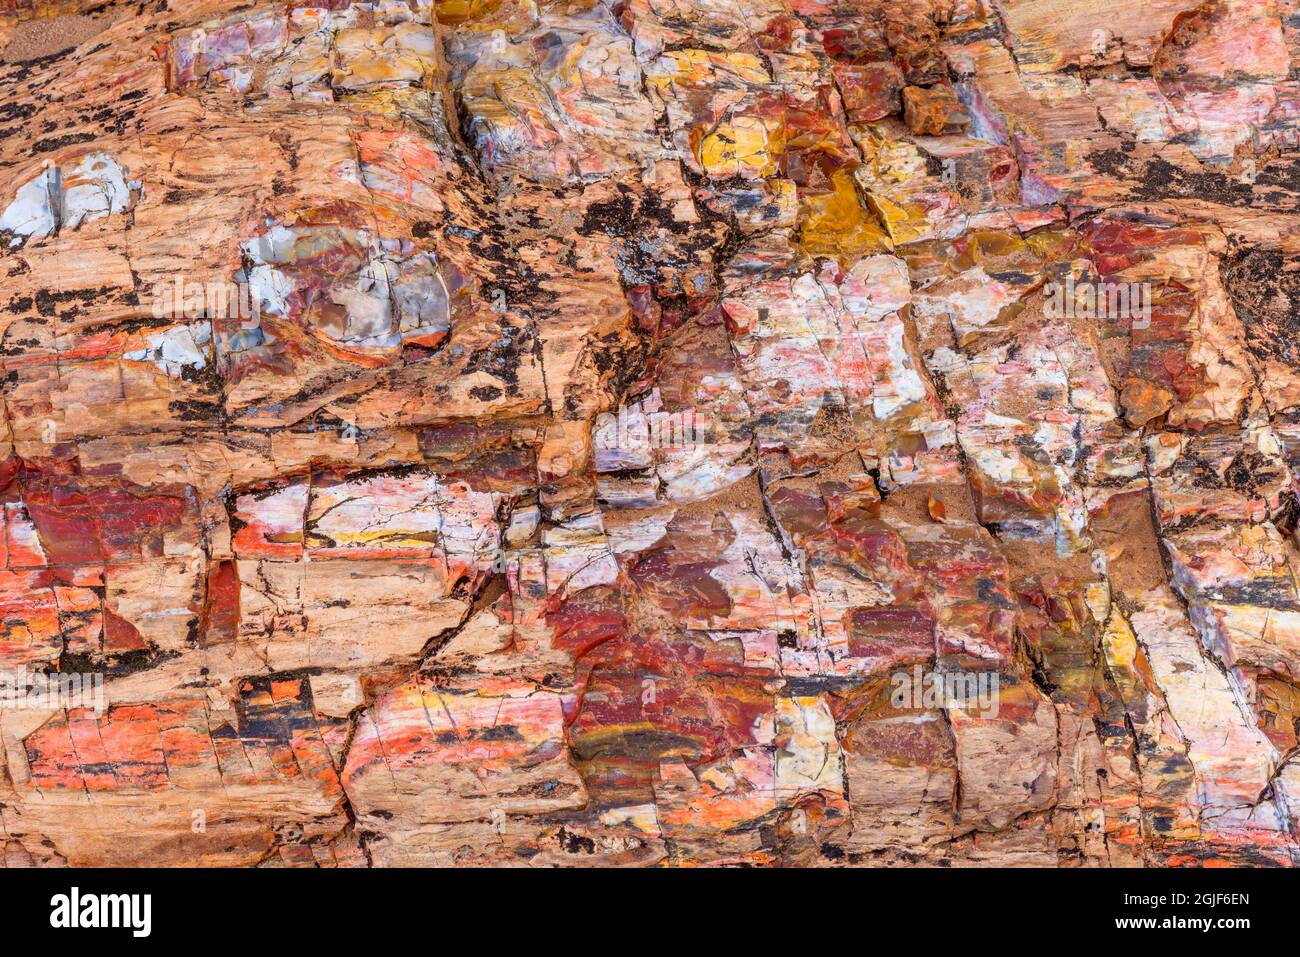 USA, Utah, Escalante Petrified Forest State Park, farbenfrohe Überreste aus versteinertem Holz. Stockfoto